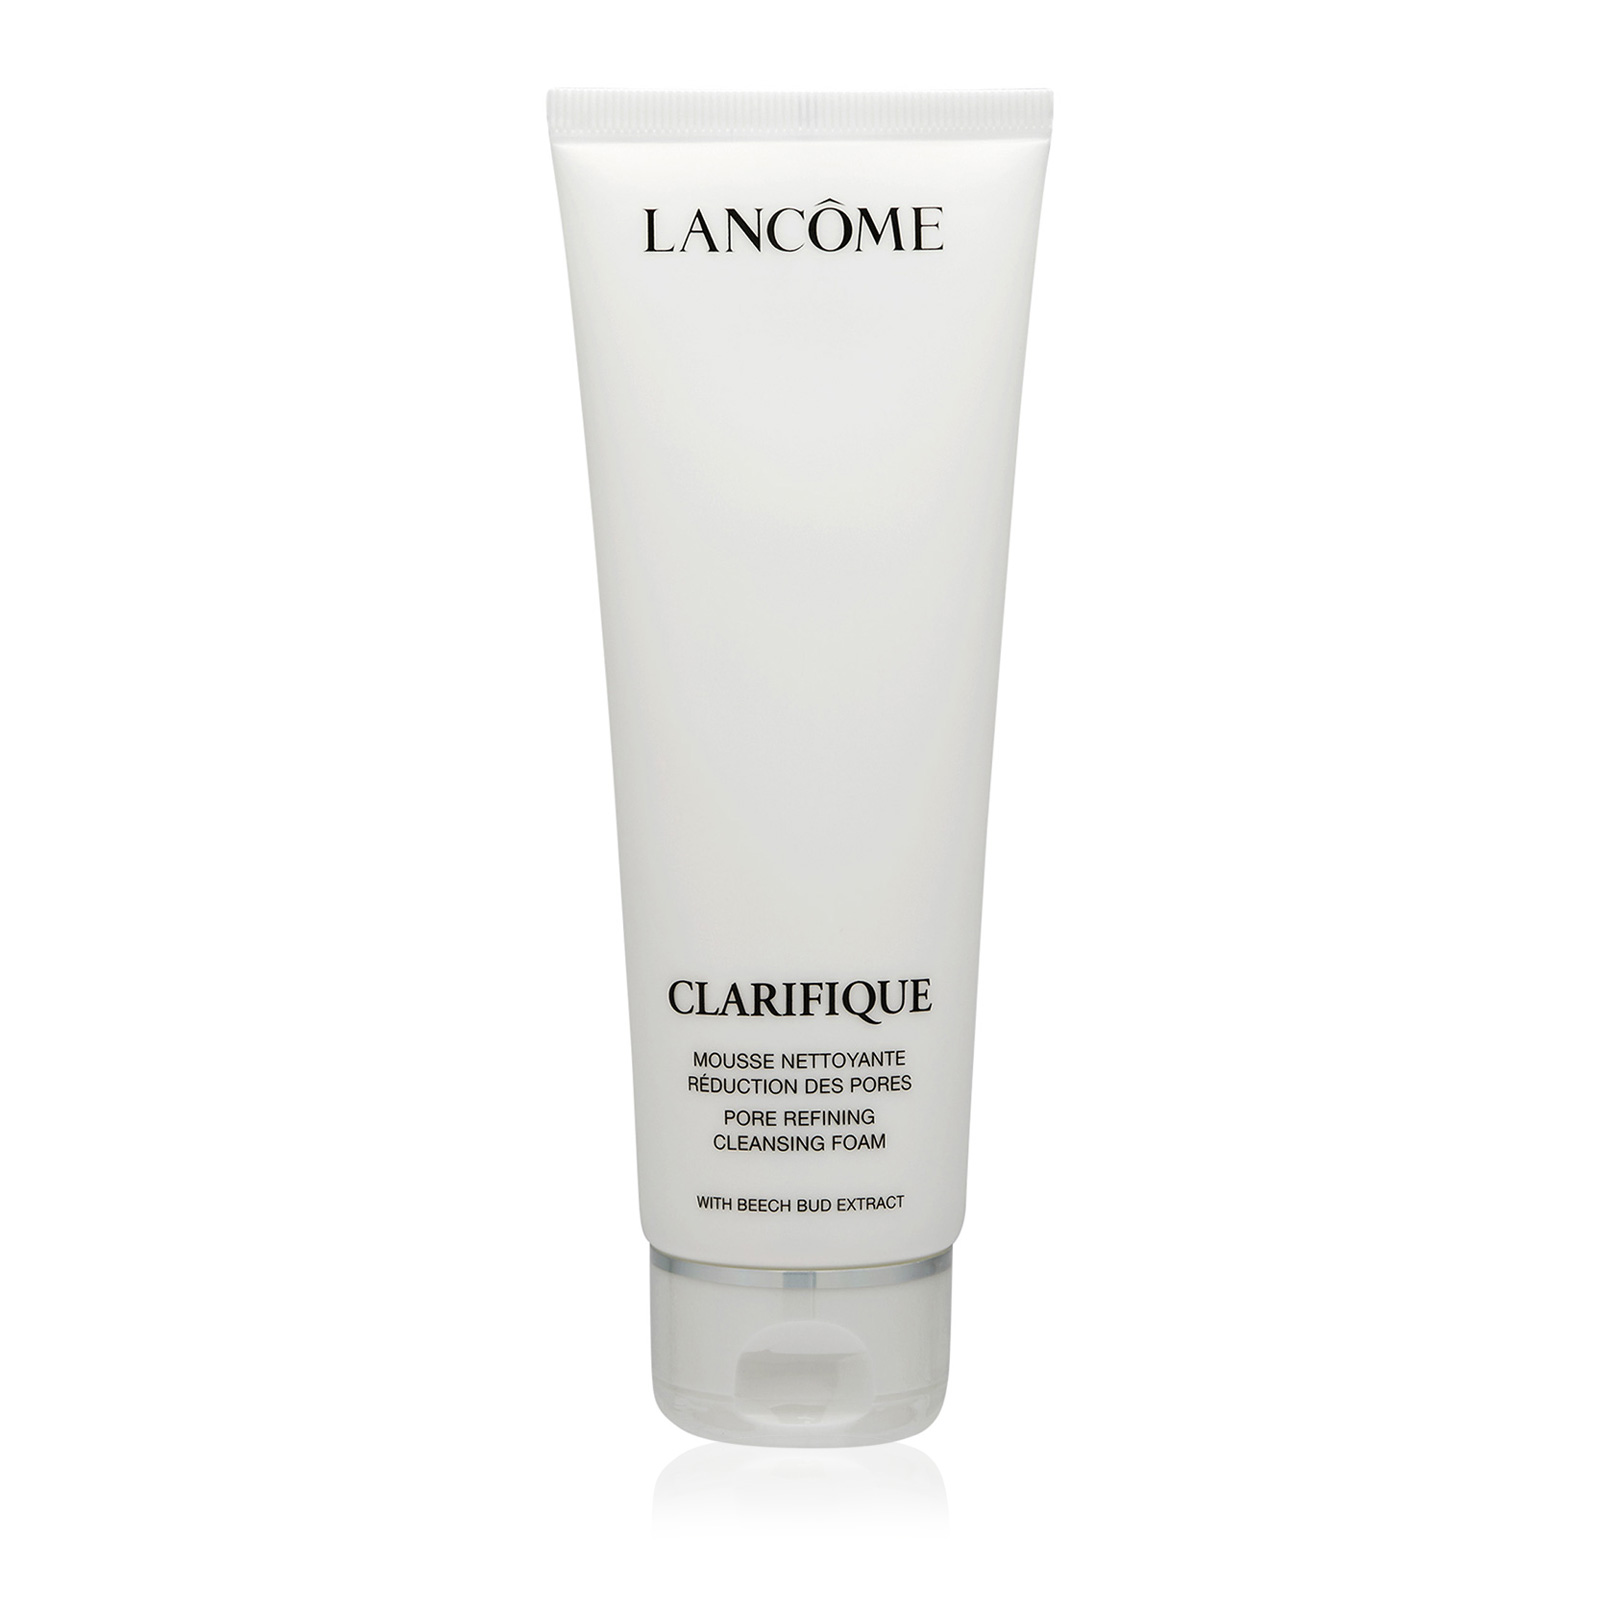 LANCÔME Clarifique Pore Refining Cleansing Foam125 ml 4.2 oz AKB Beauty